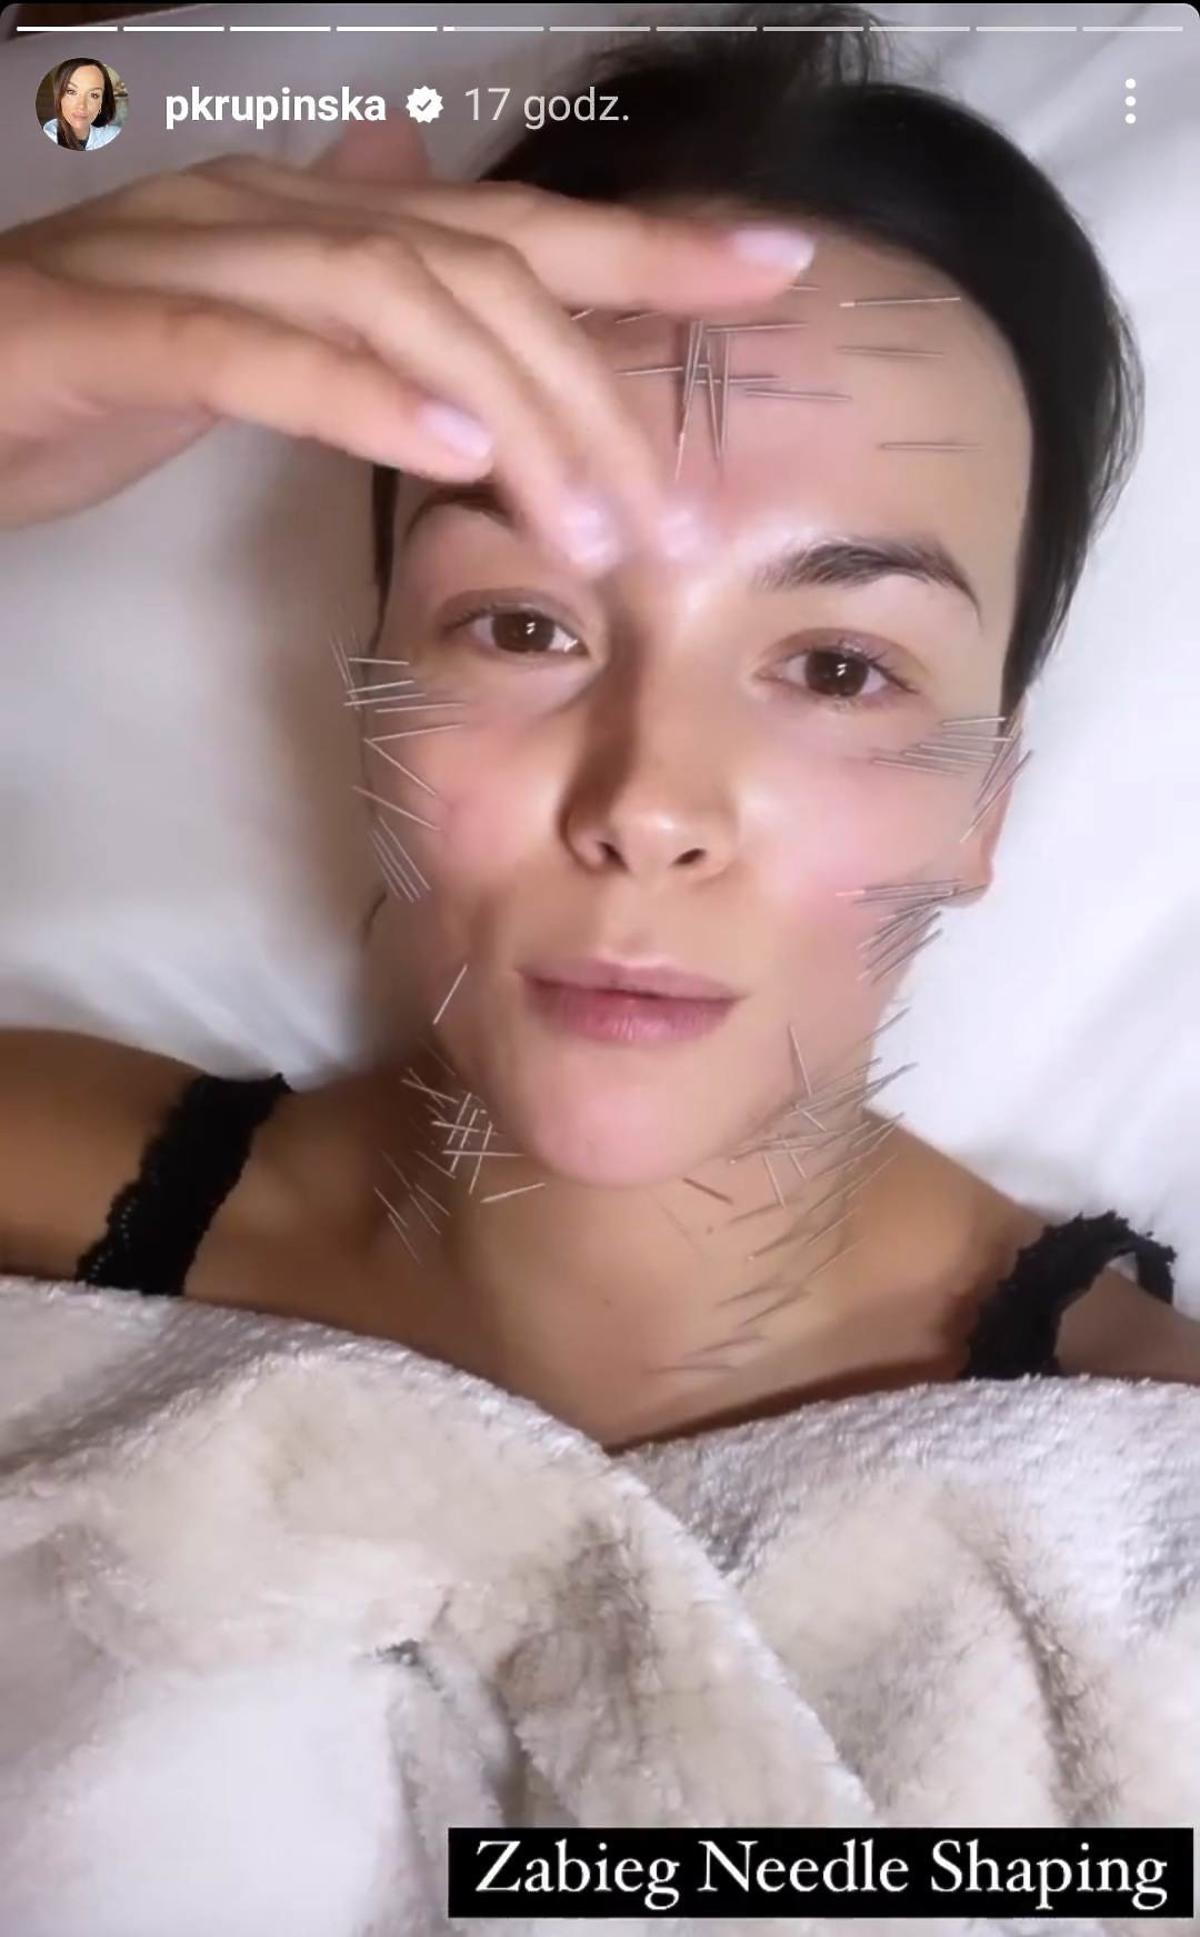 Paulina Krupińska opublikowała nagranie z igłami wbitymi w twarz